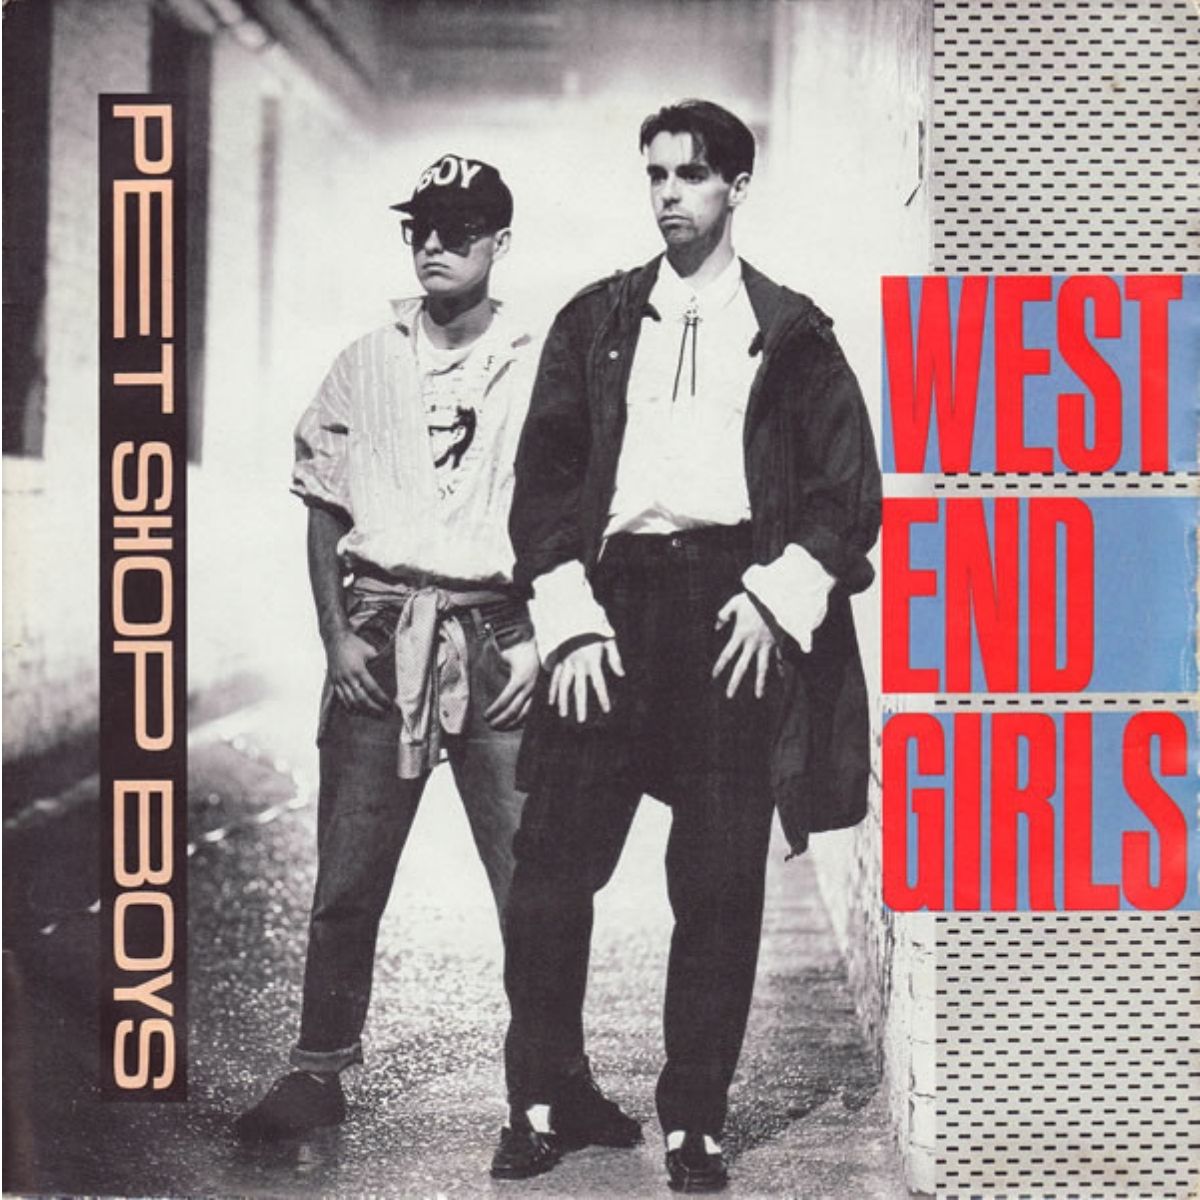 Couverture du single "West End Girls" des Pet Shop Boys.